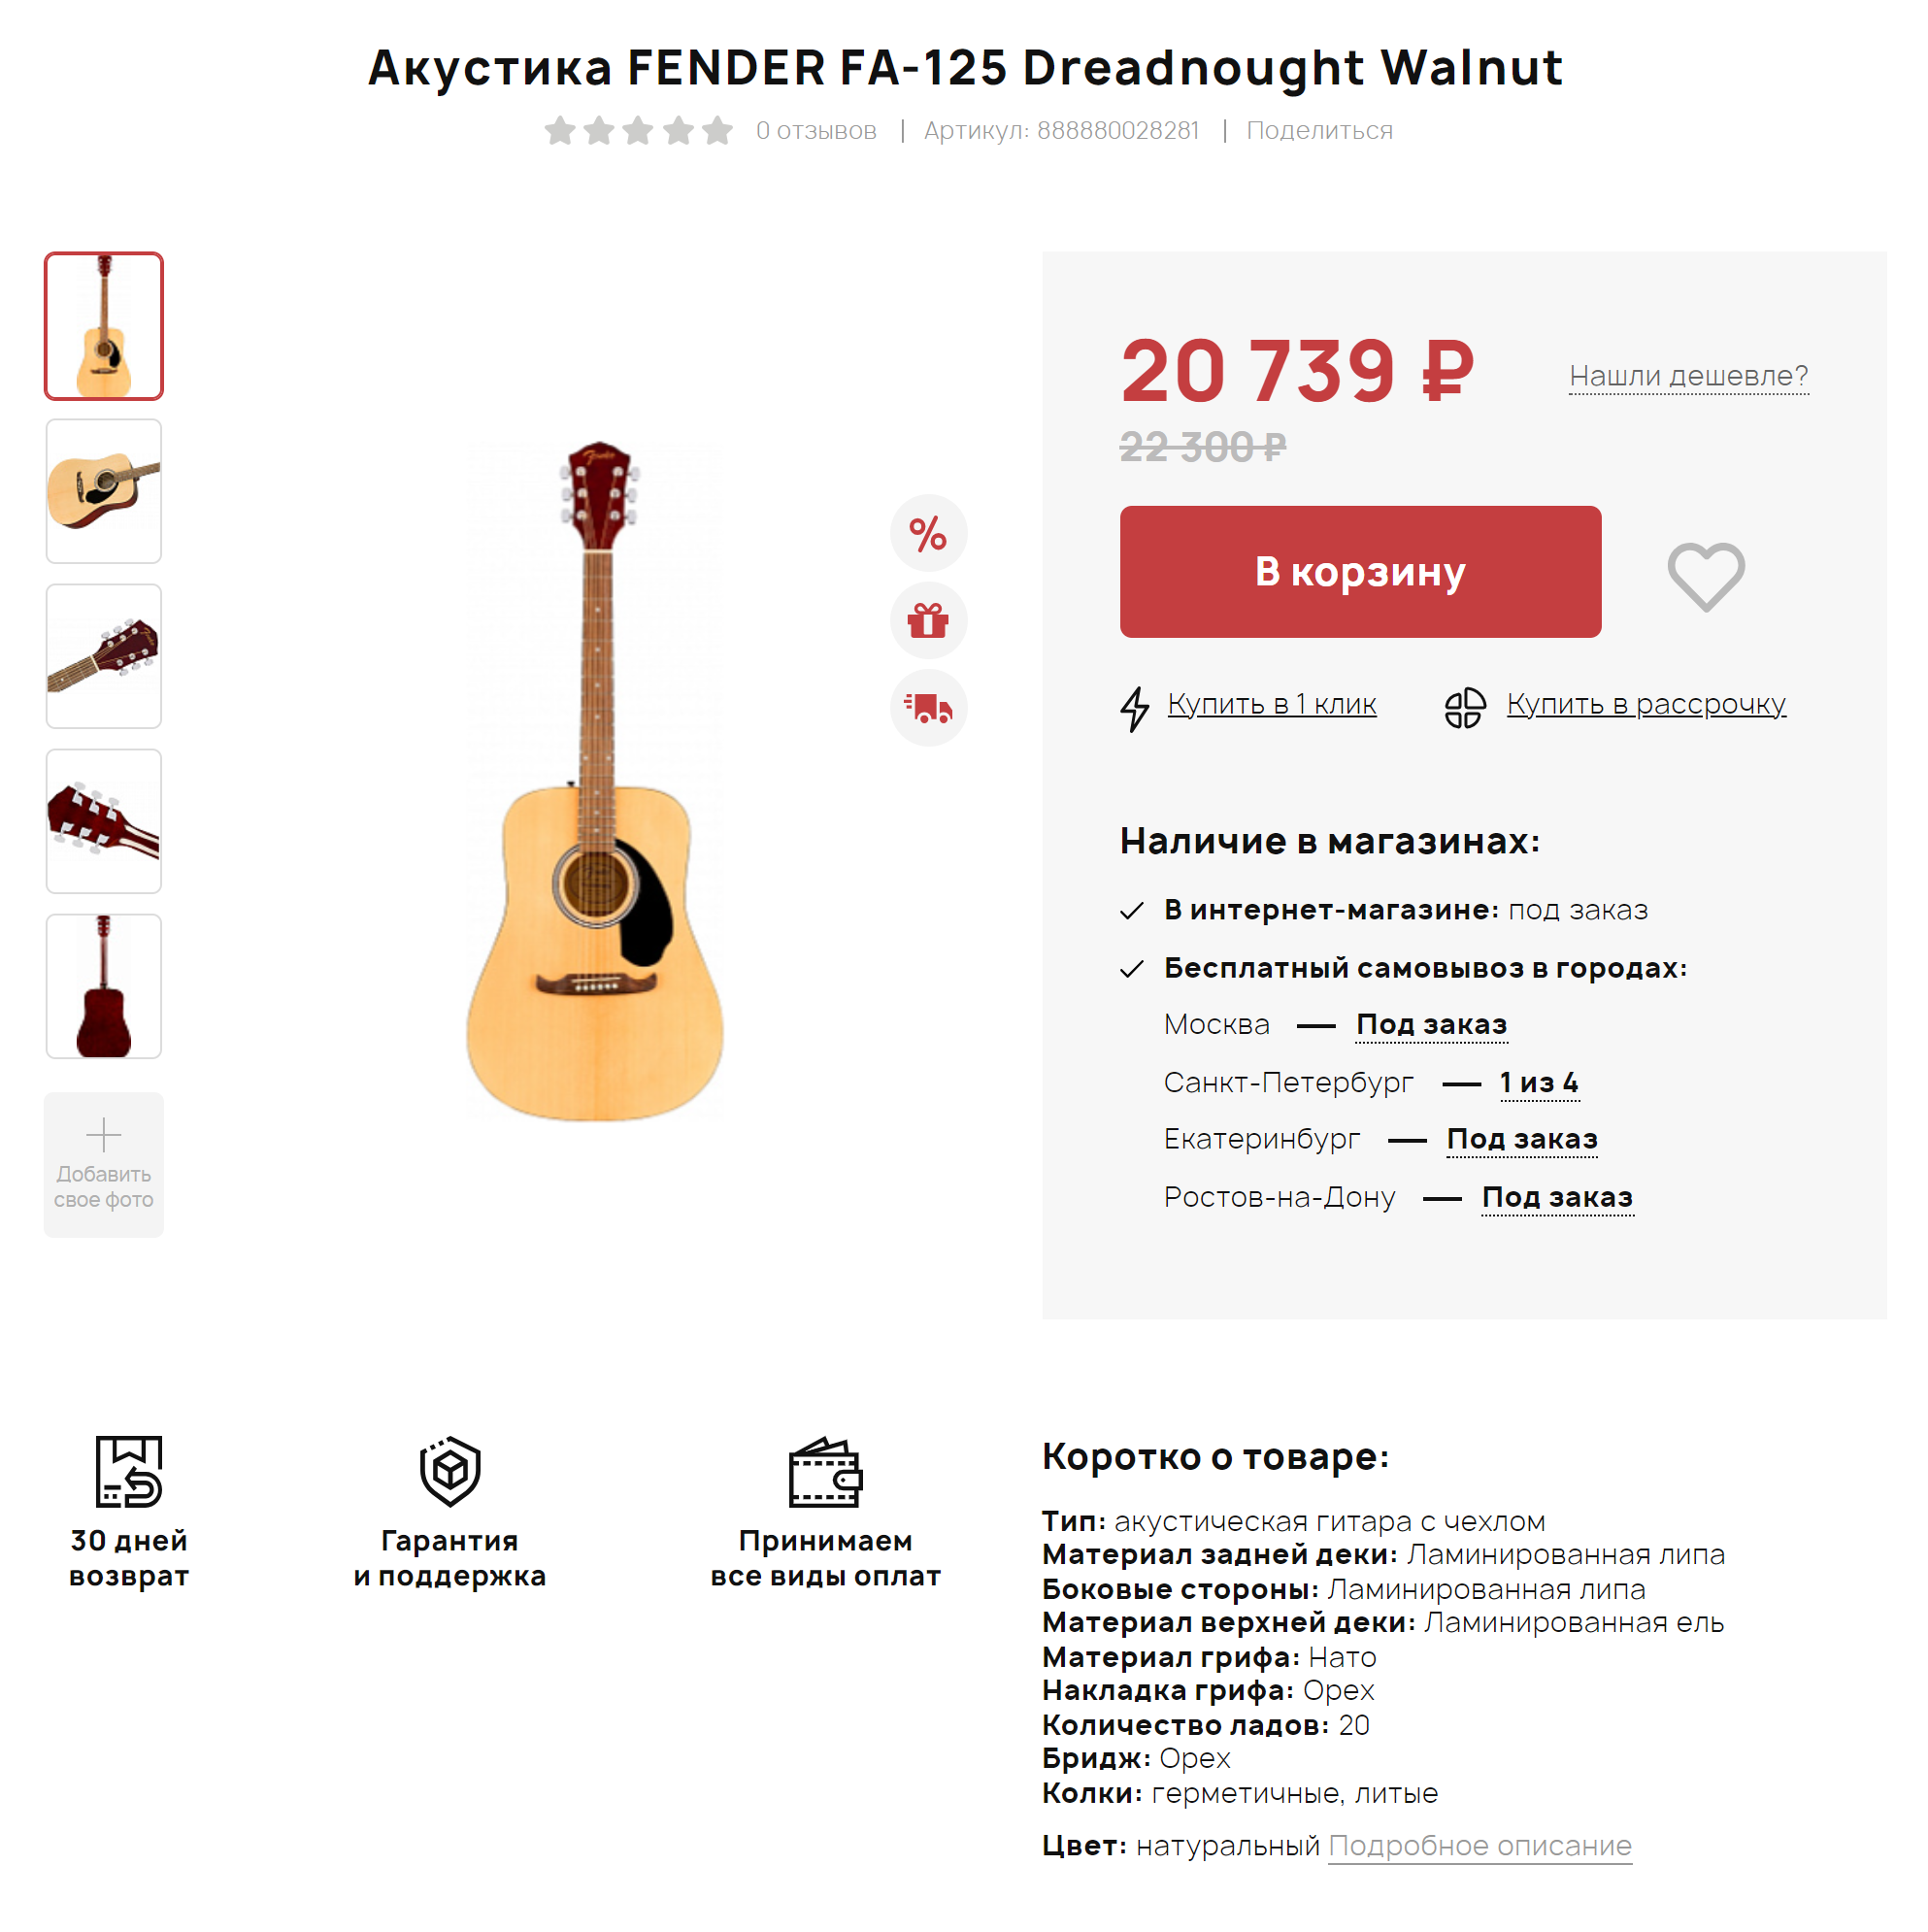 Fender FA-125 на сайте «Поп-мьюзик». Популярная среди новичков акустическая гитара